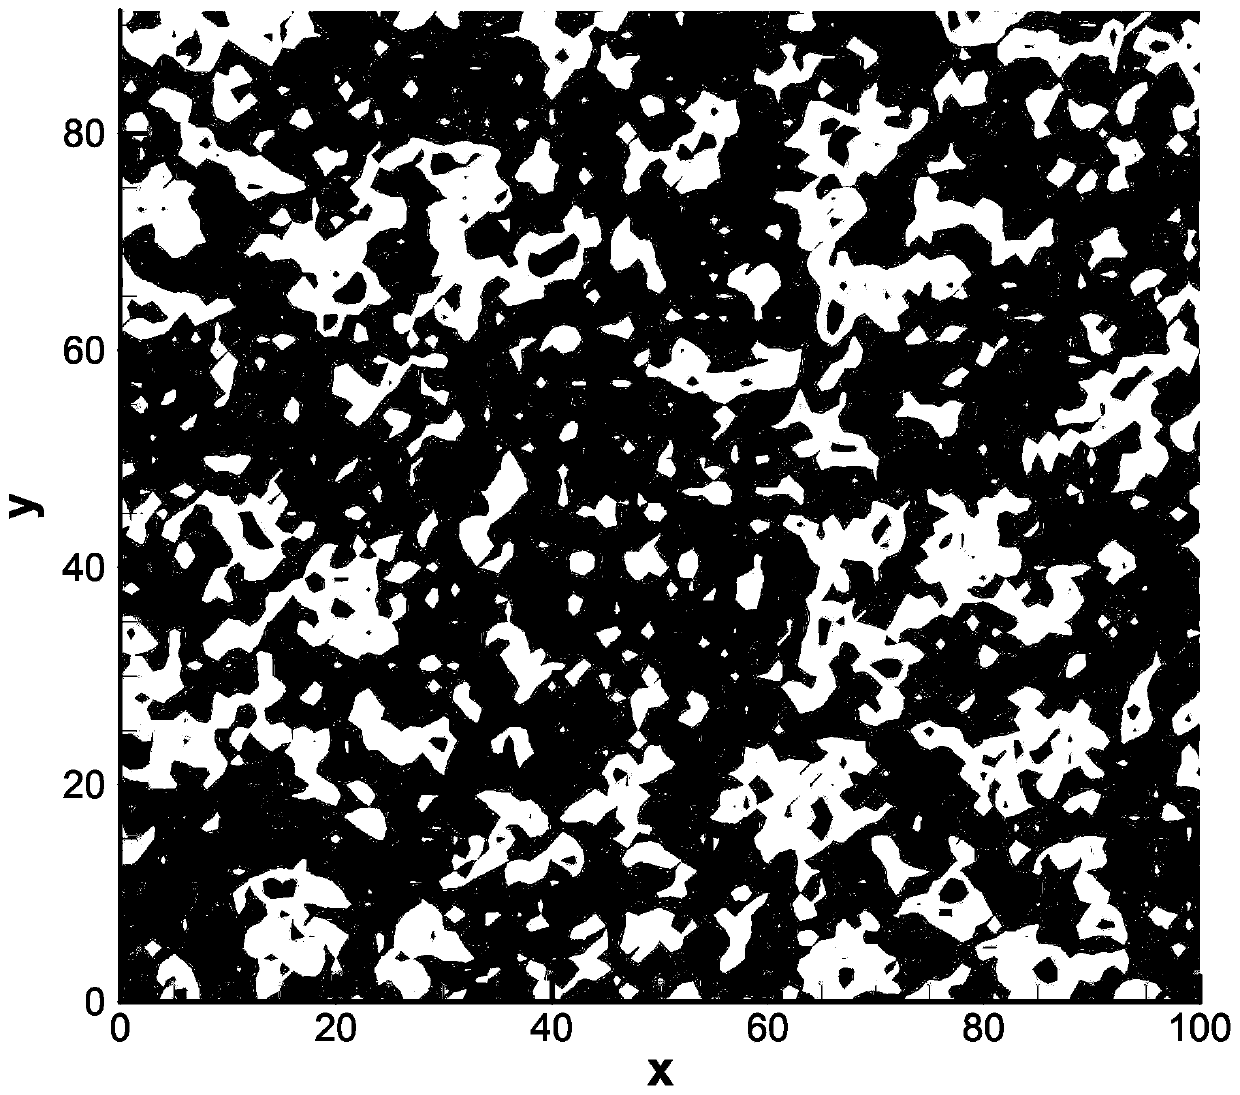 Rock-soil parameter random field inversion method